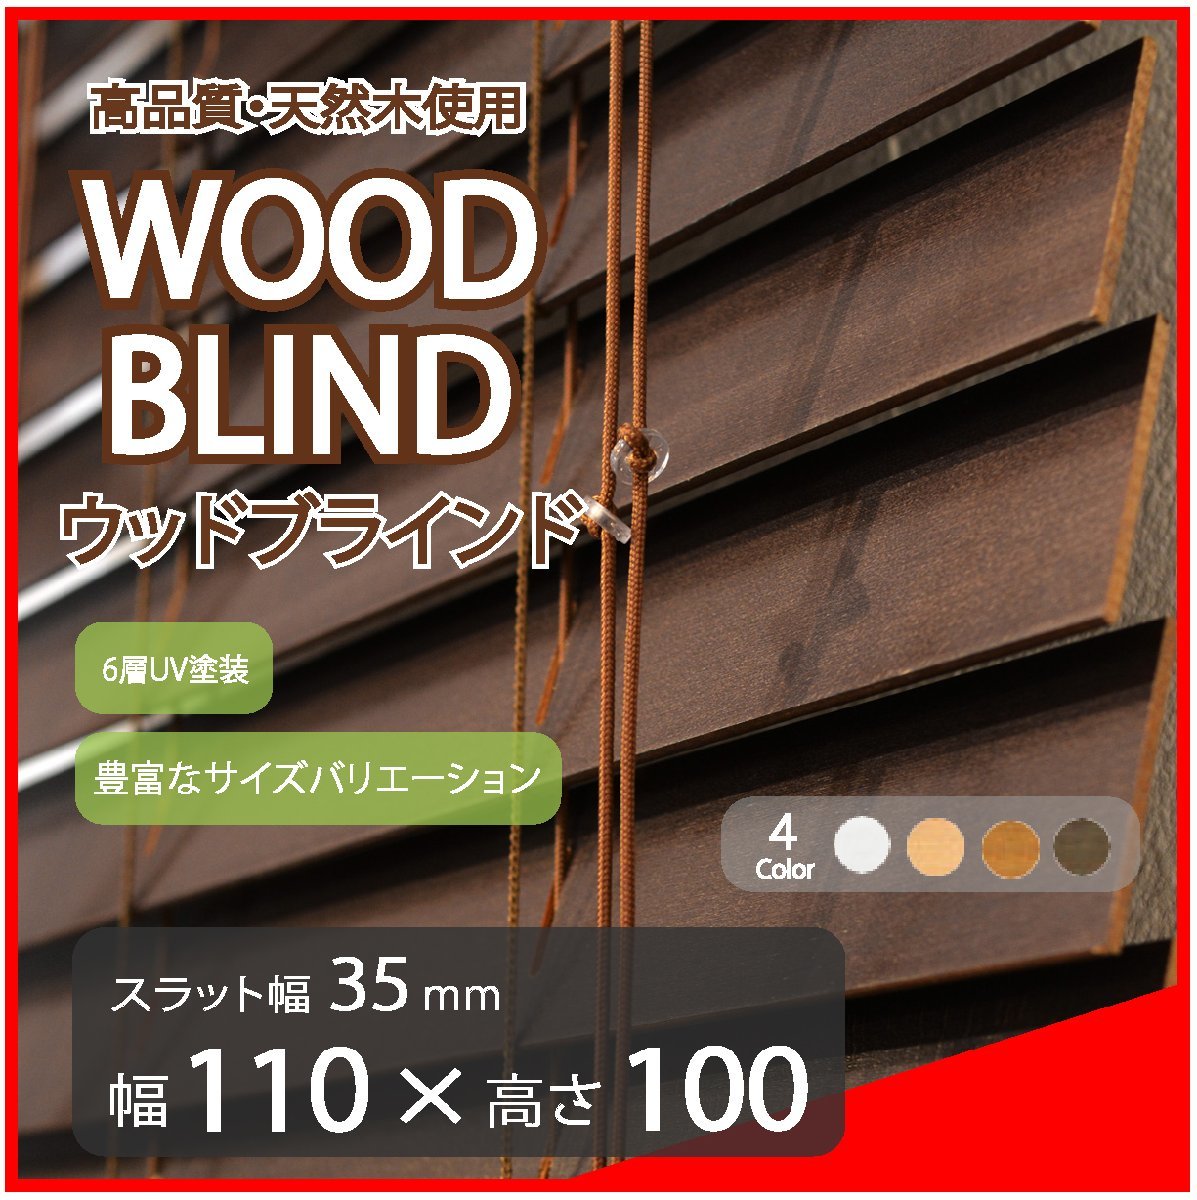 高品質 ウッドブラインド 木製 ブラインド 既成サイズ スラット(羽根)幅35mm 幅110cm×高さ100cm ダーク